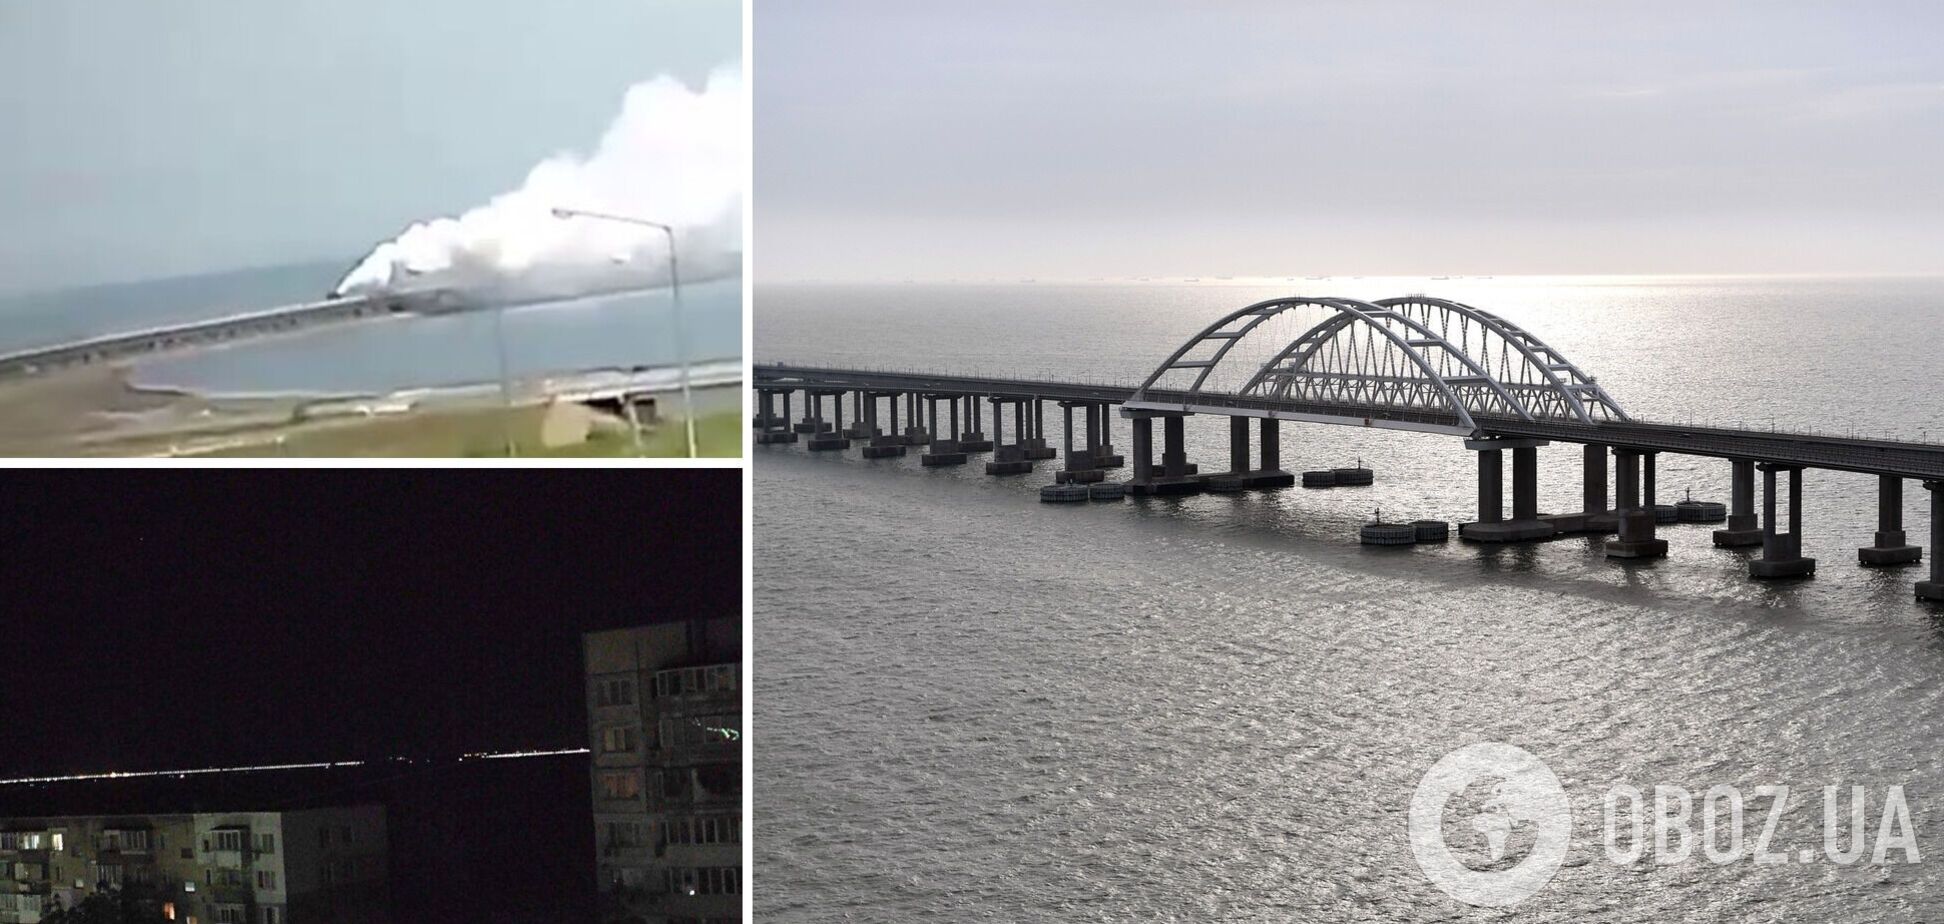 'Плита моста съехала вниз': очевидцы рассказали о моменте и последствиях взрыва на Крымском мосту. Фото и видео